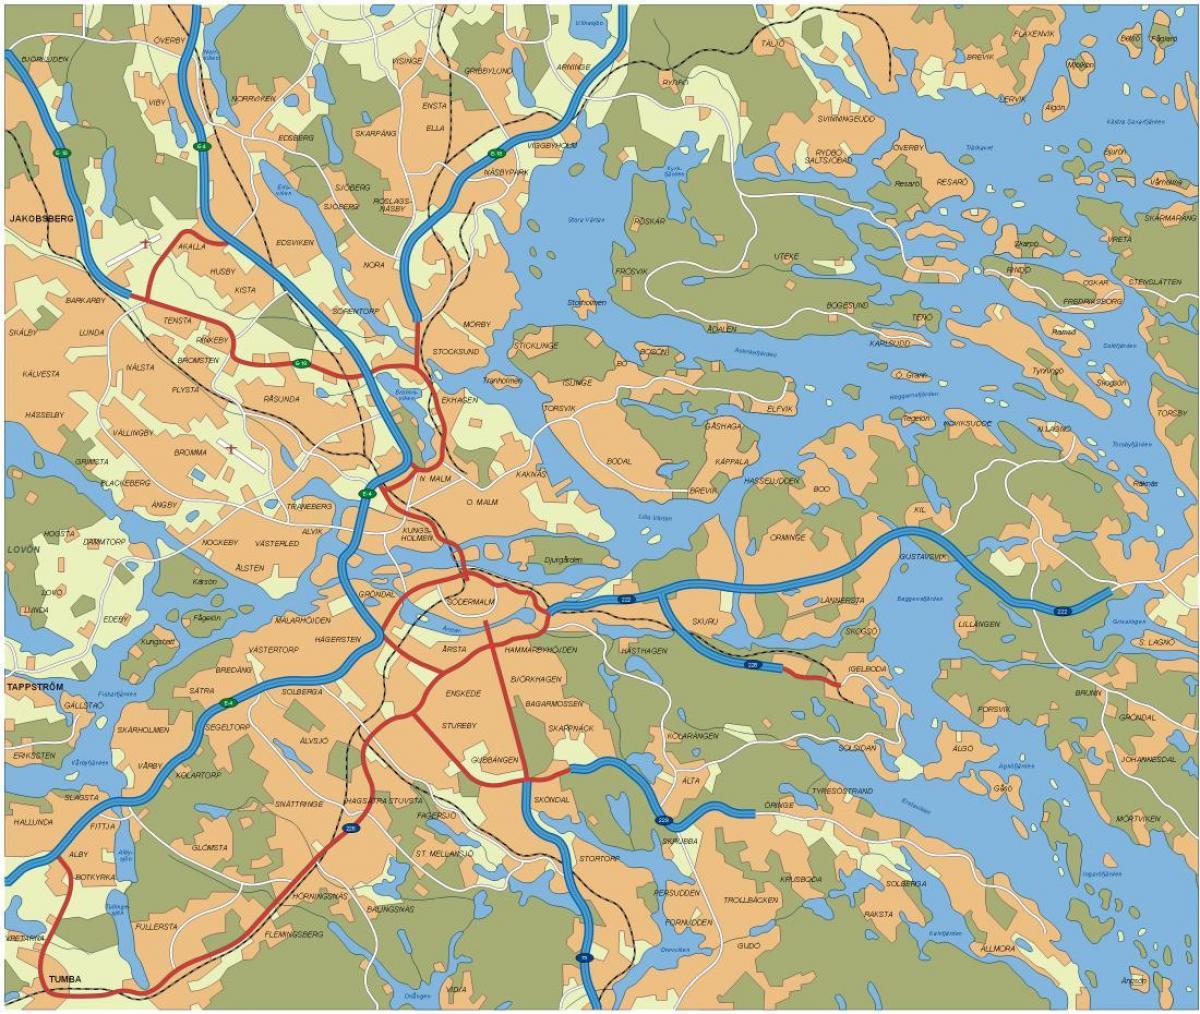 ストックホルムの道路地図